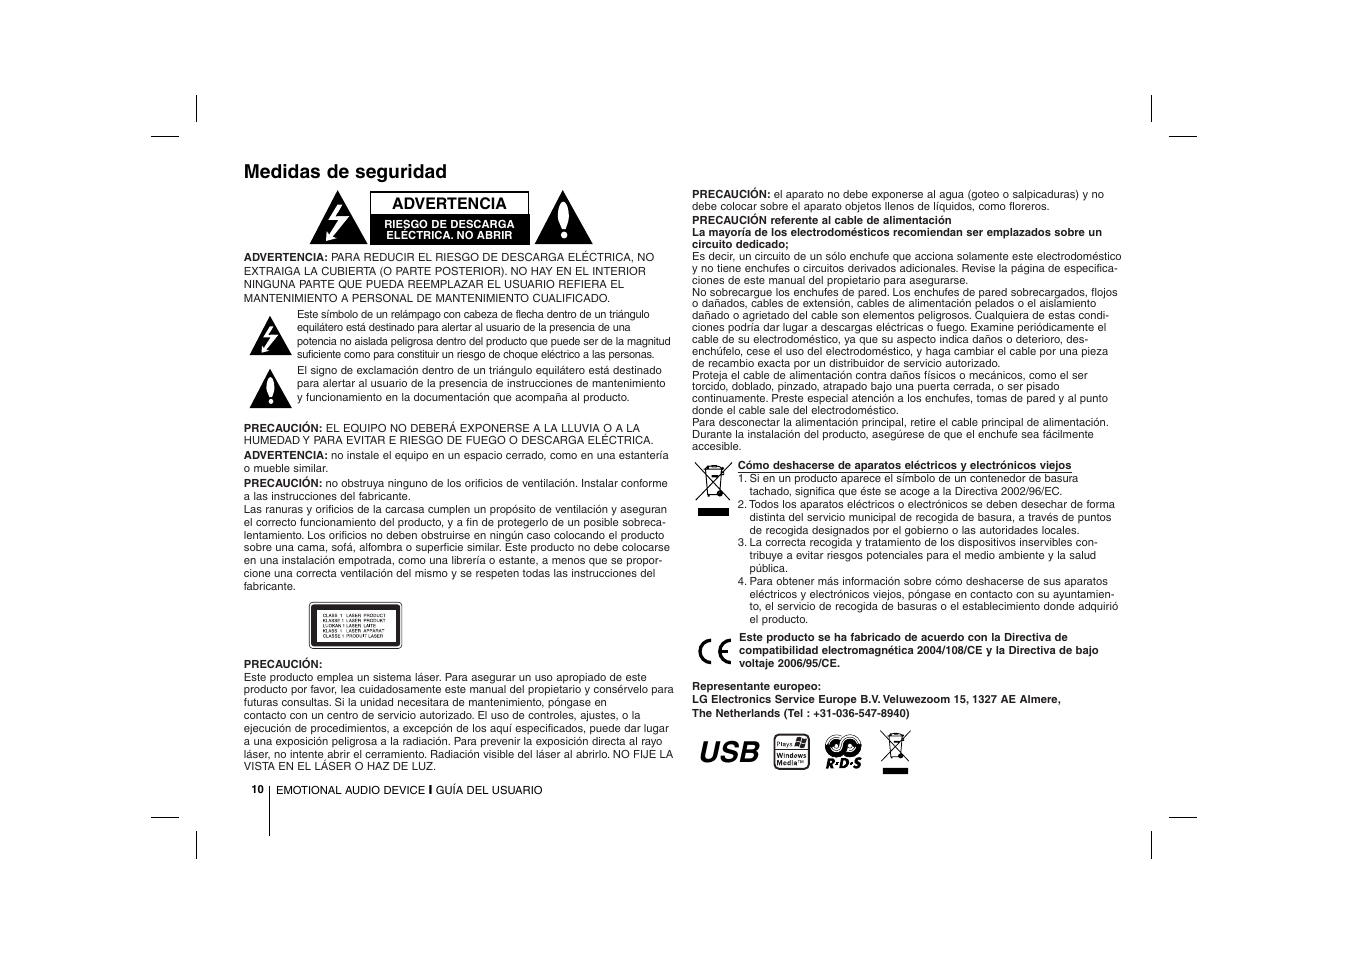 Medidas de seguridad | LG PC12 Manual del usuario | Página 10 / 12